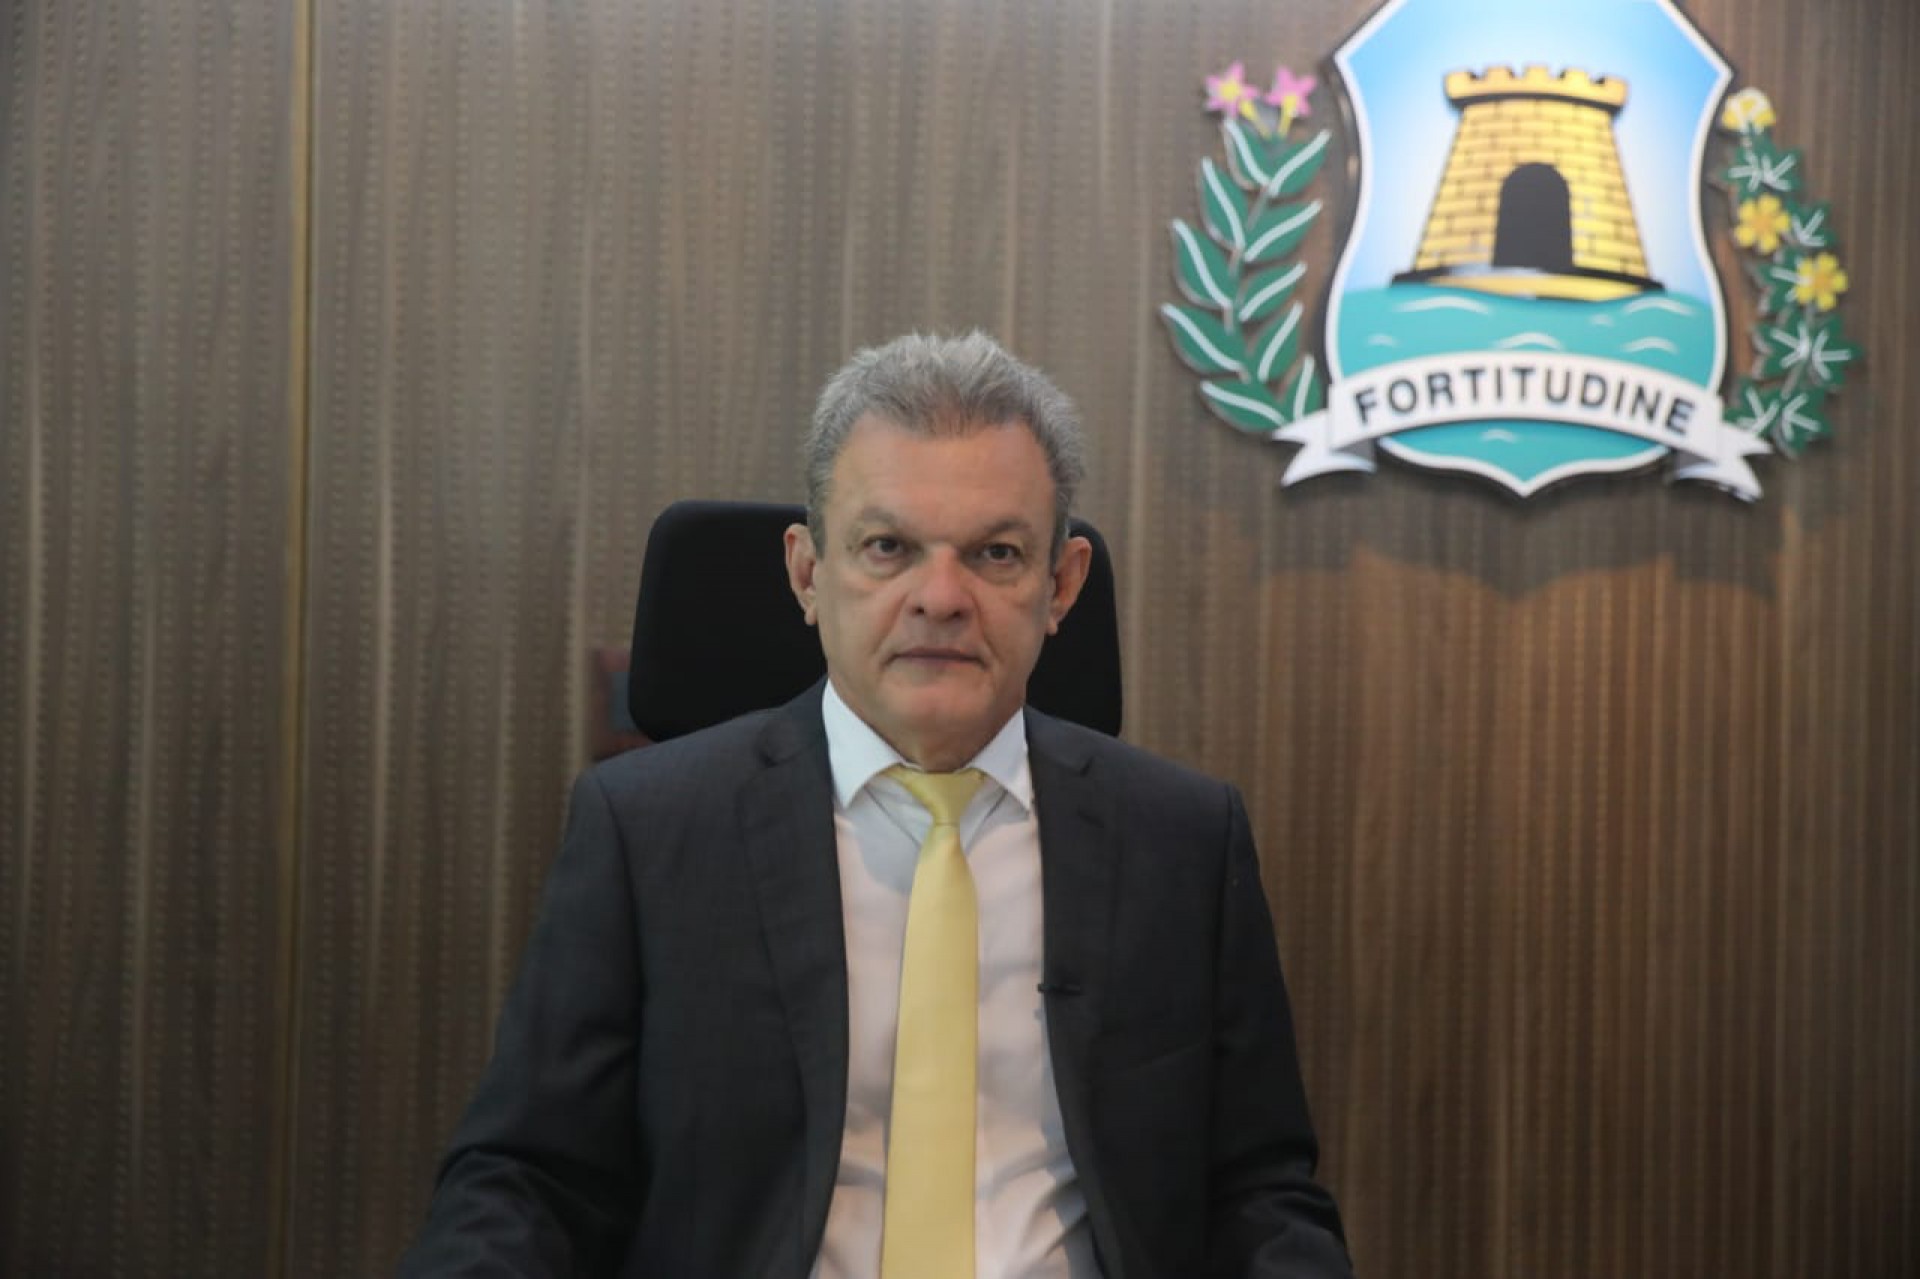 Anúncio sobre renegociação de dívidas tributárias e fiscais com prefeitura de Fortaleza foi feito pelo prefeito, José Sarto Nogueira (PDT), por meio das redes sociais (Foto: Divulgação/Prefeitura Municipal)